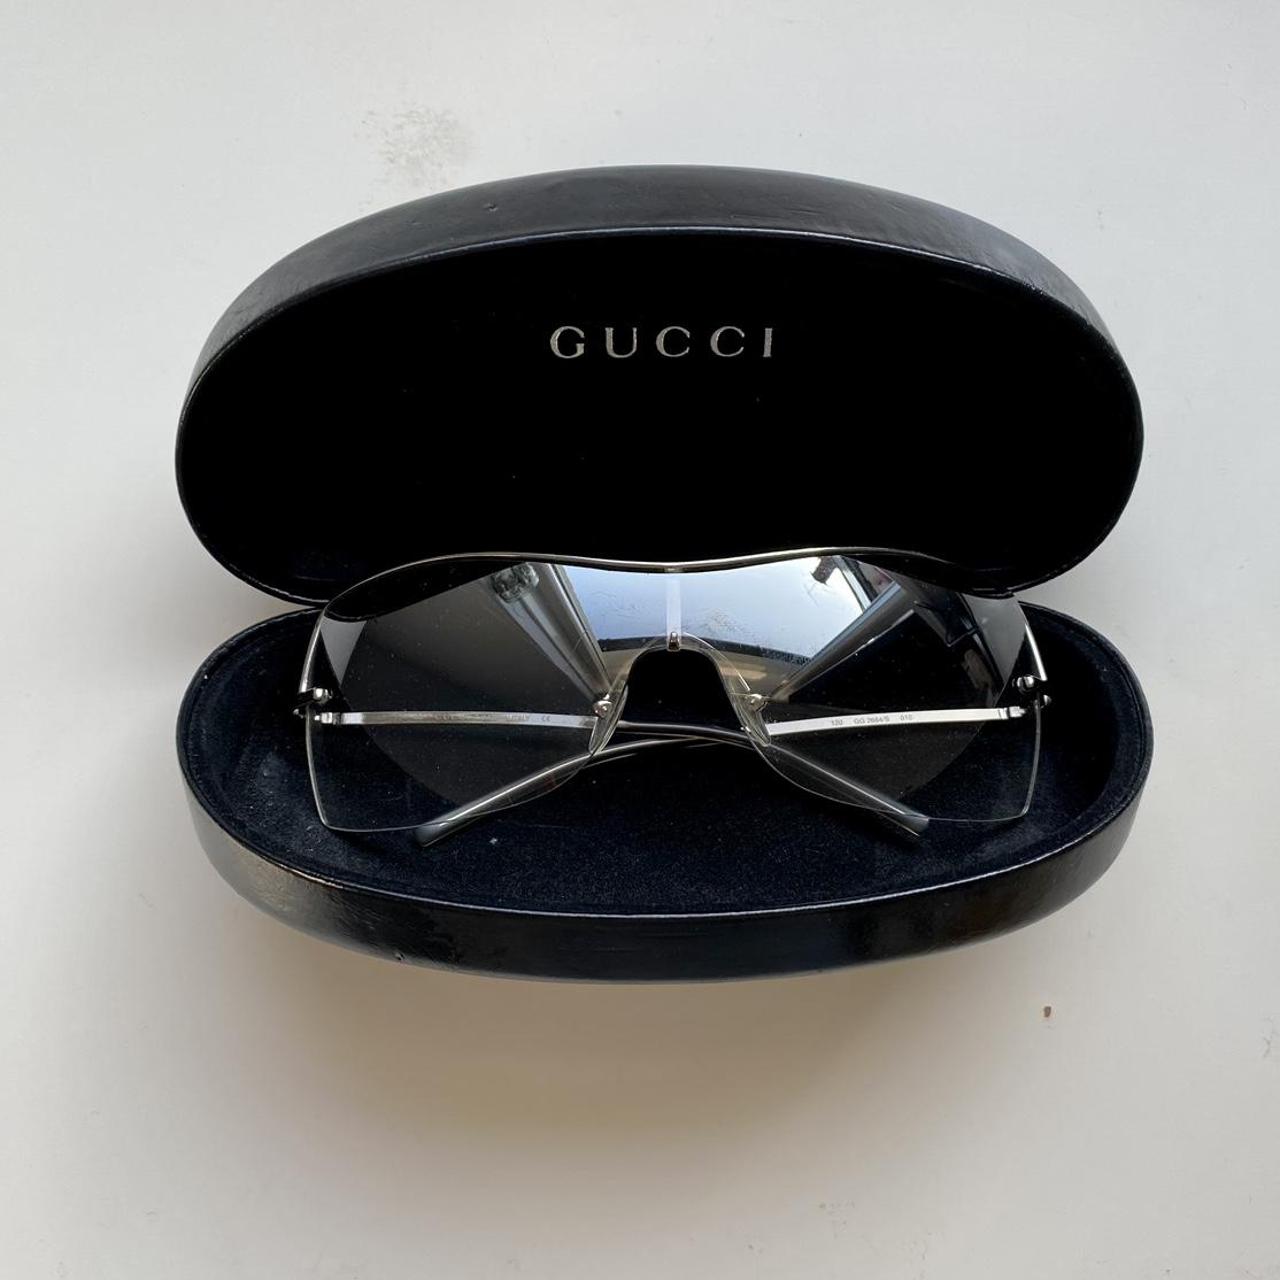 90s vintage gucci rimless sunglasses I loveeee... - Depop